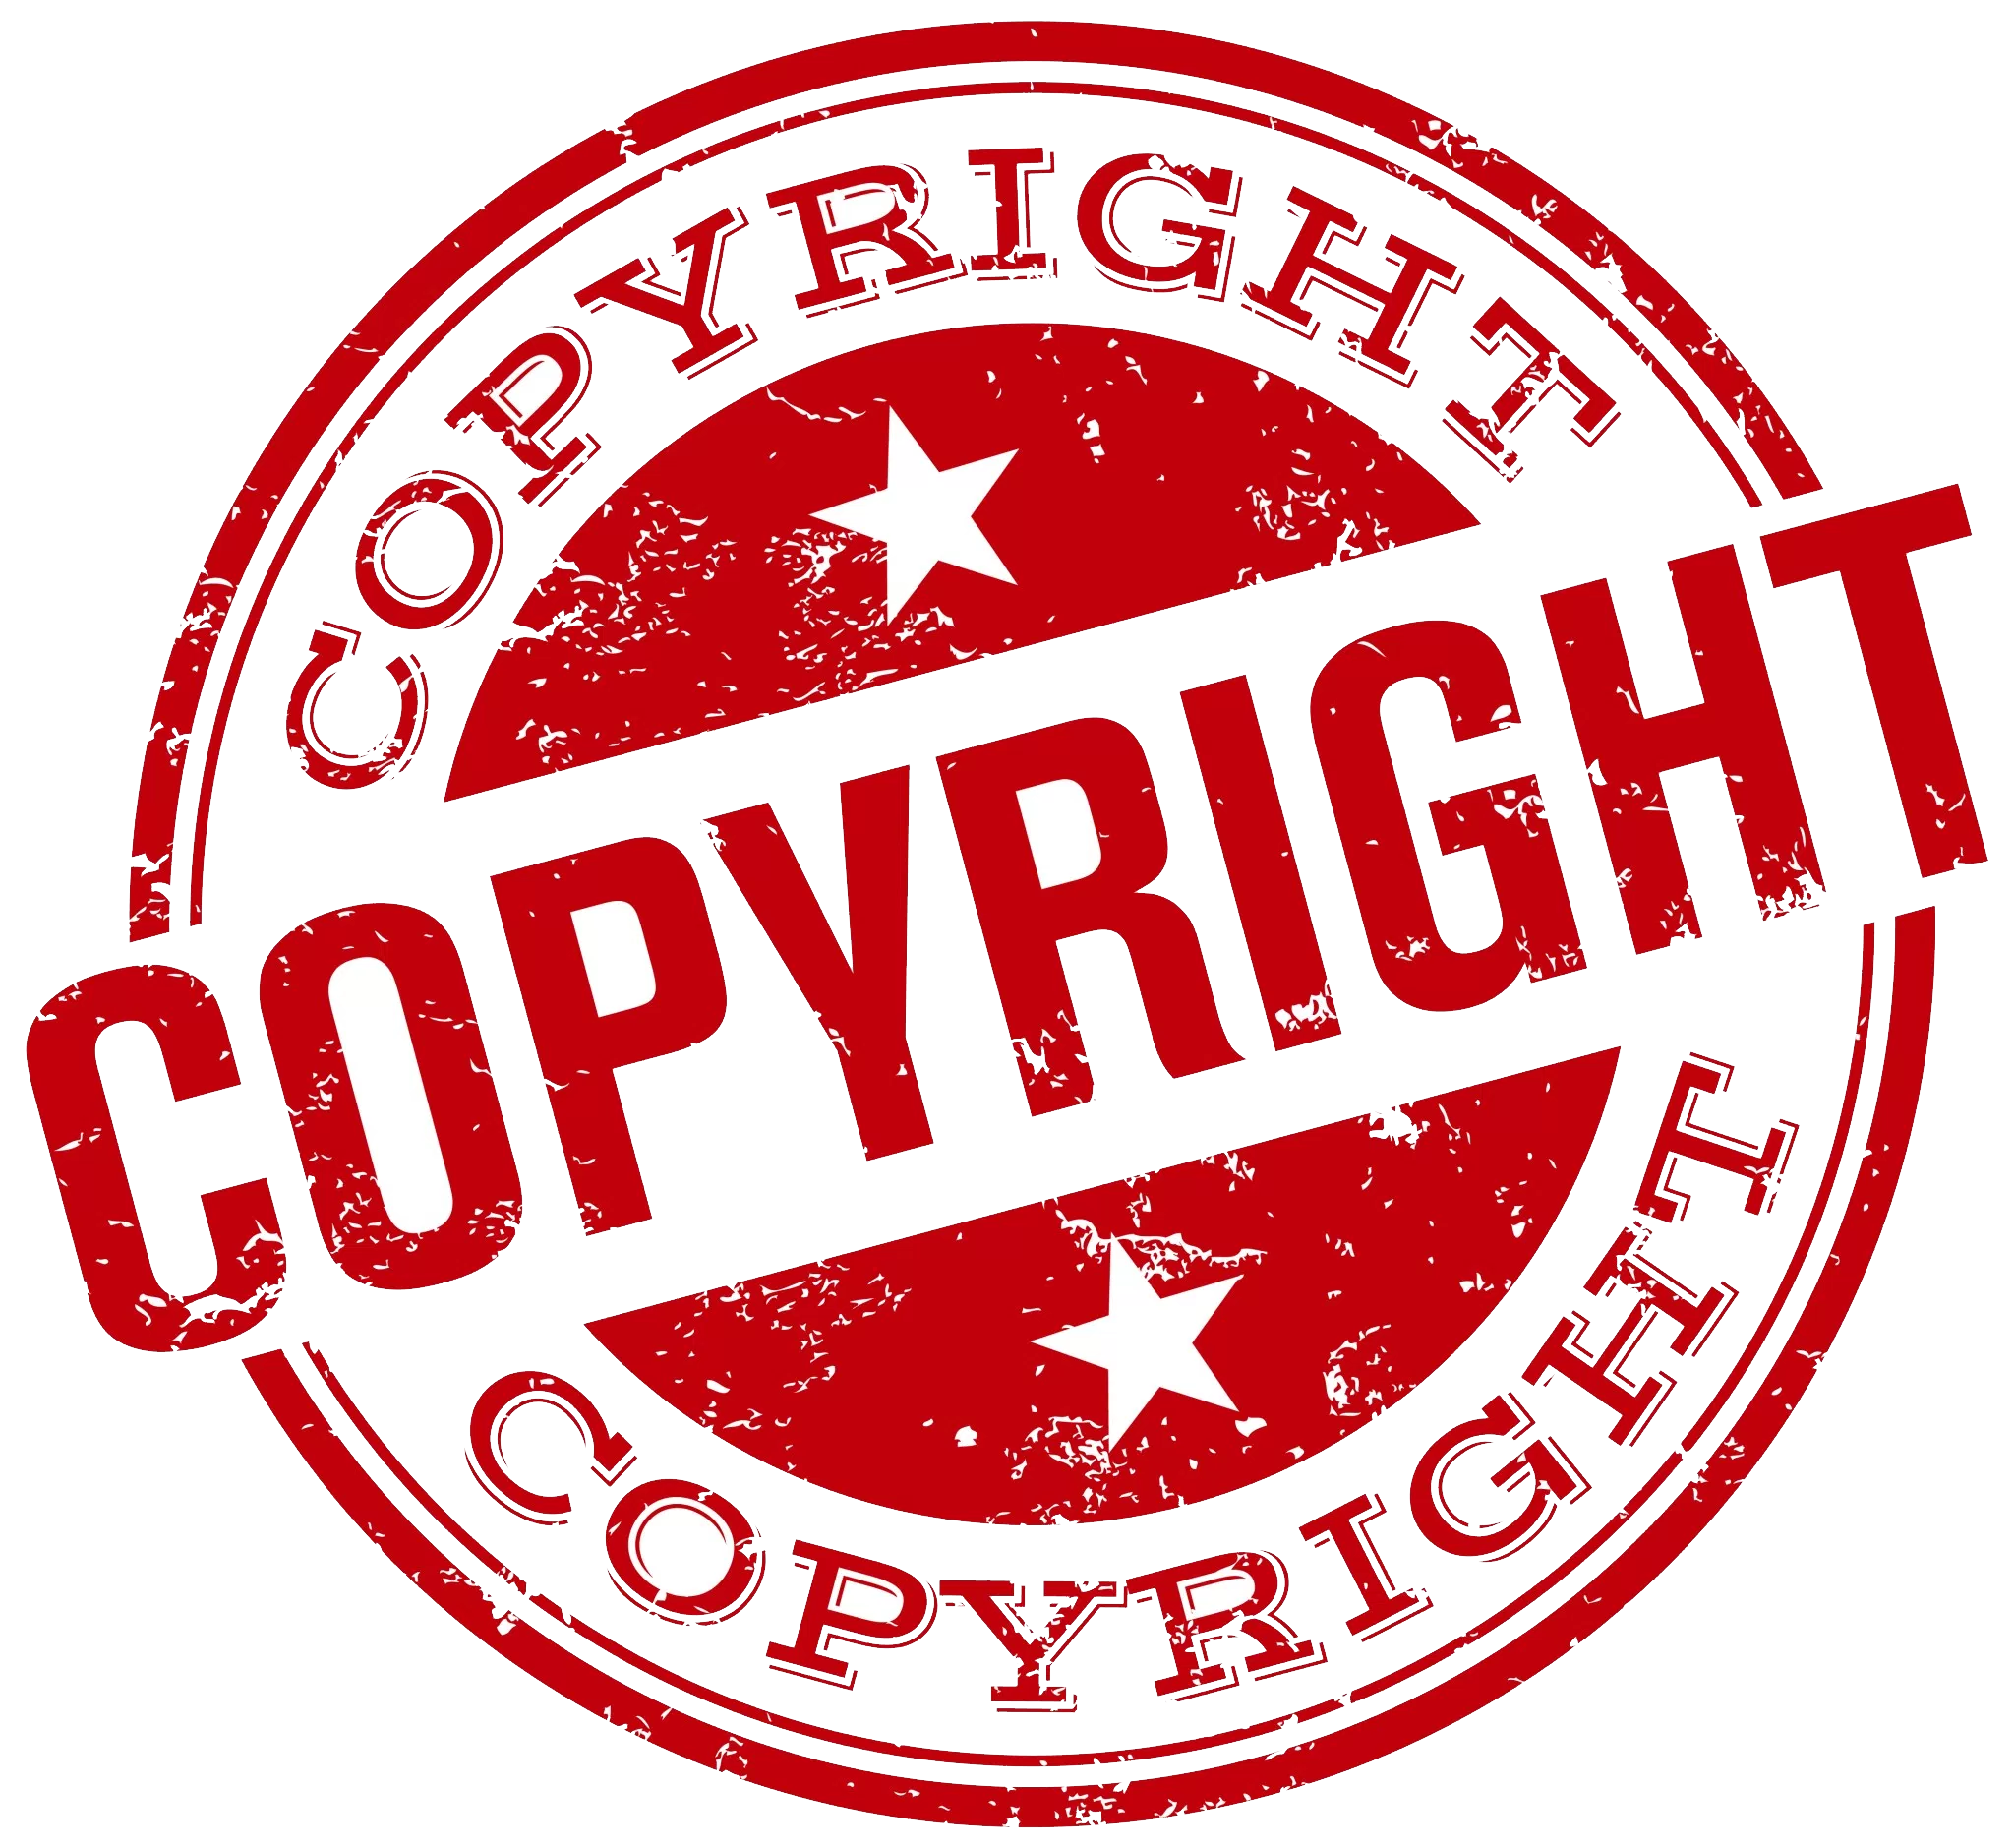 Copyright PNG